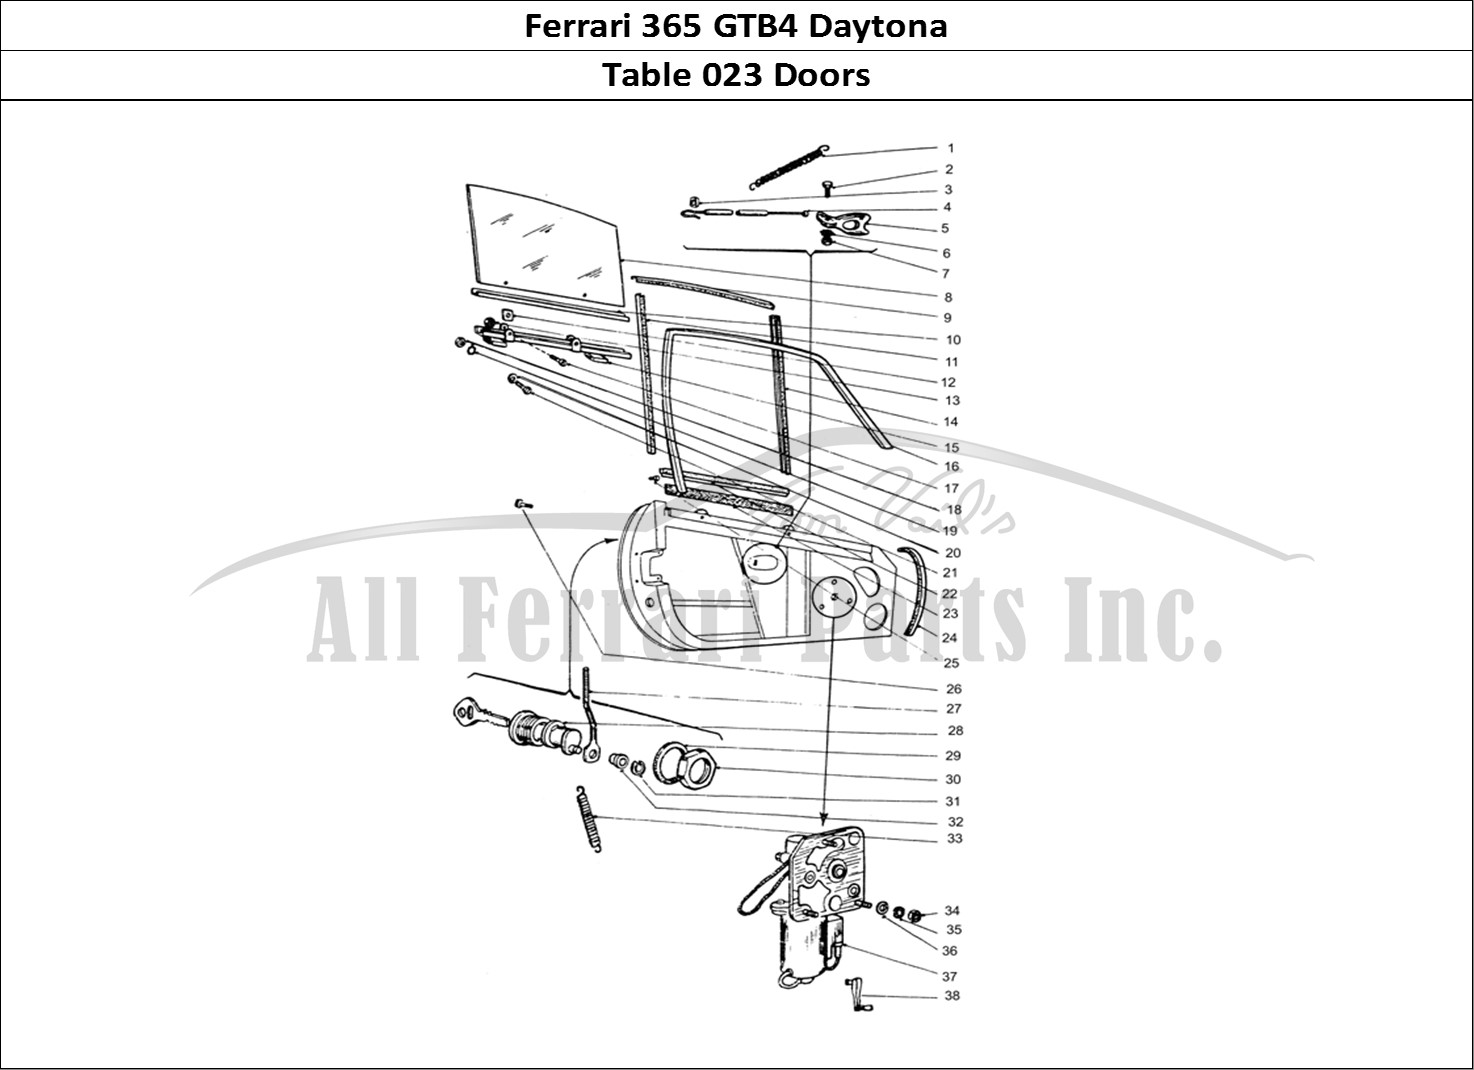 Ferrari Parts Ferrari 365 GTB4 Daytona (Coachwork) Page 023 Door Glass frame & locks